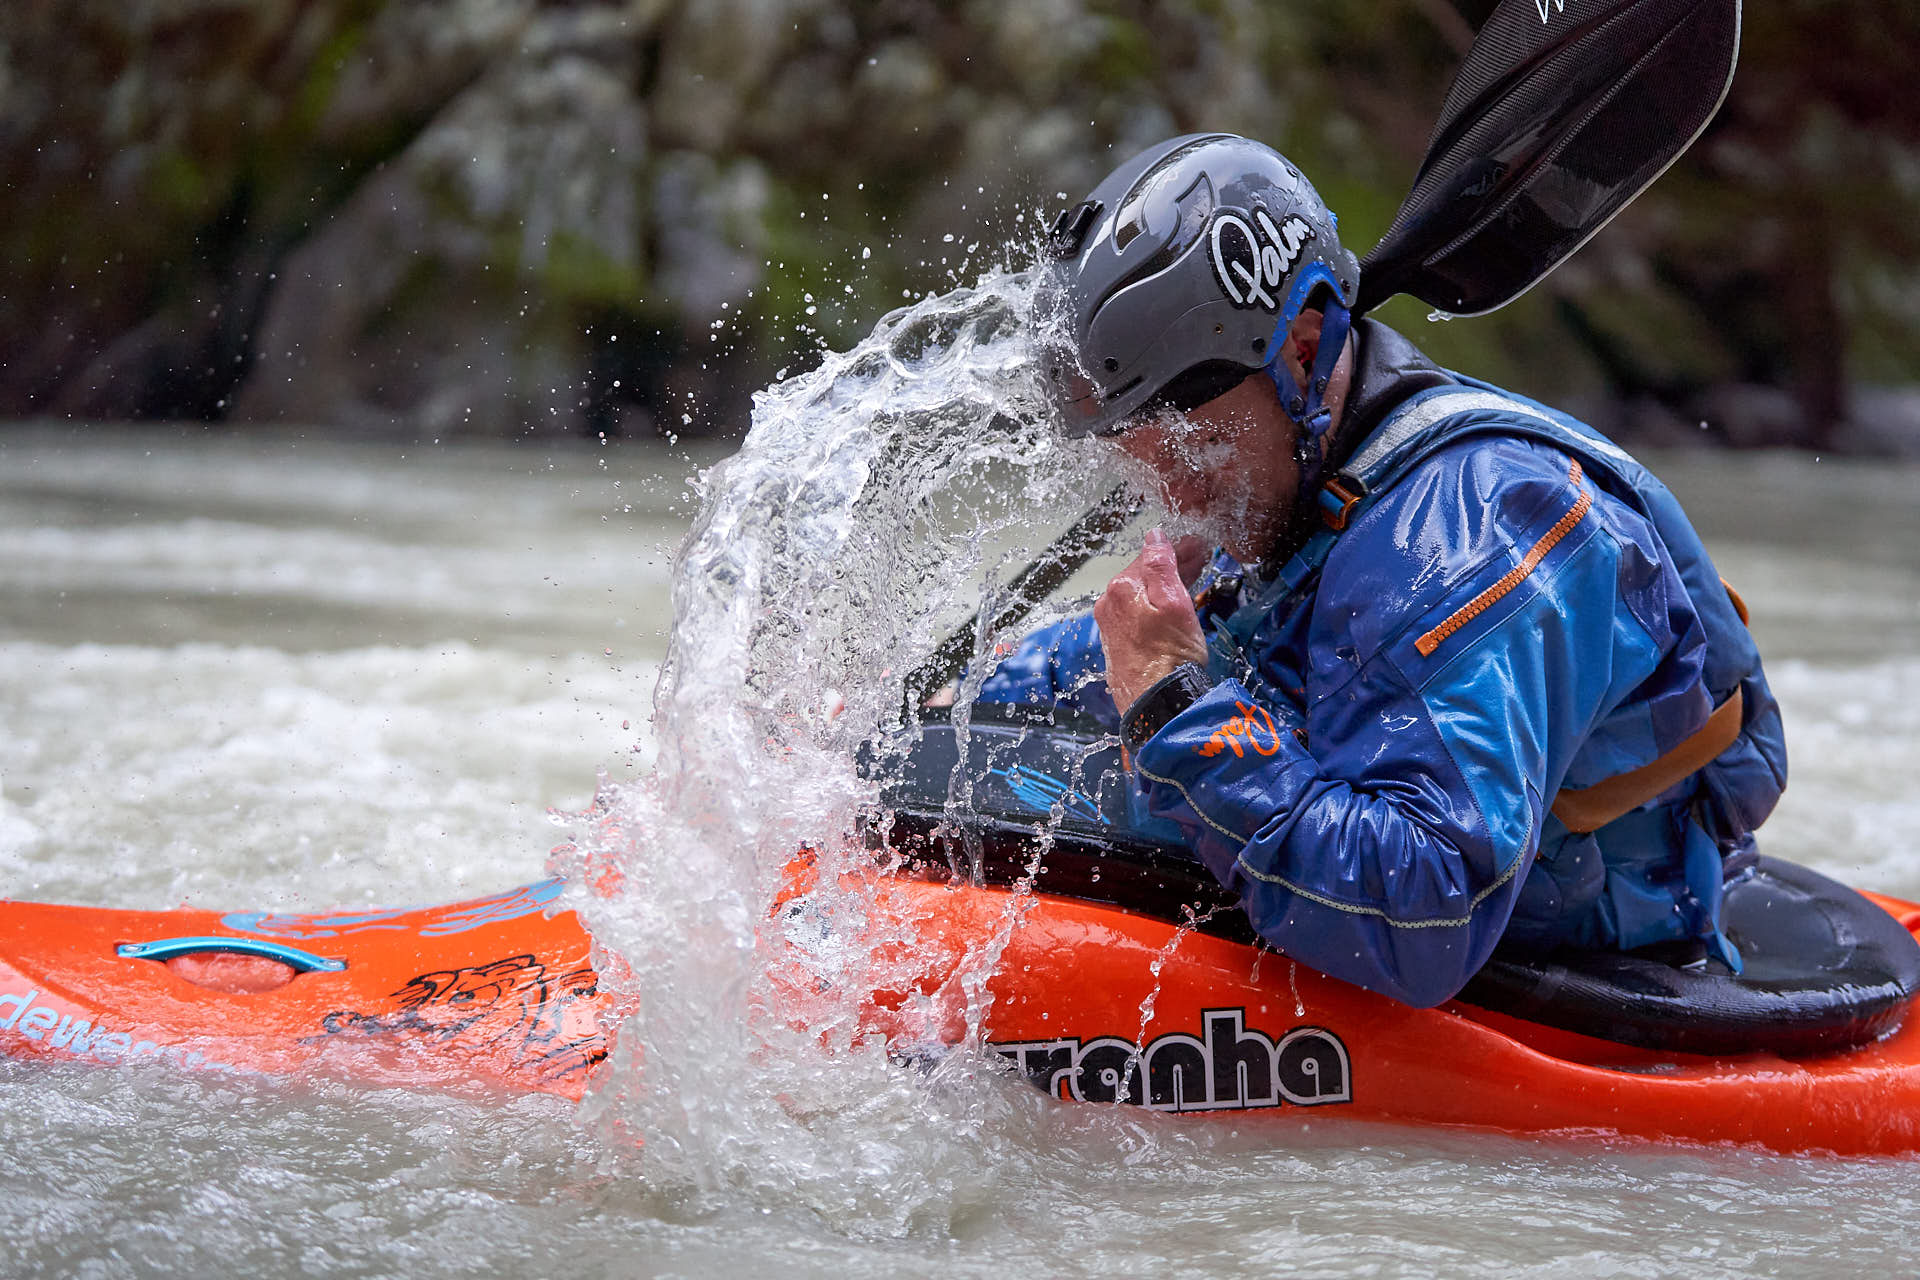 Whitewater / kayak photoshoot with Bren Orton in Oetztal, Austria